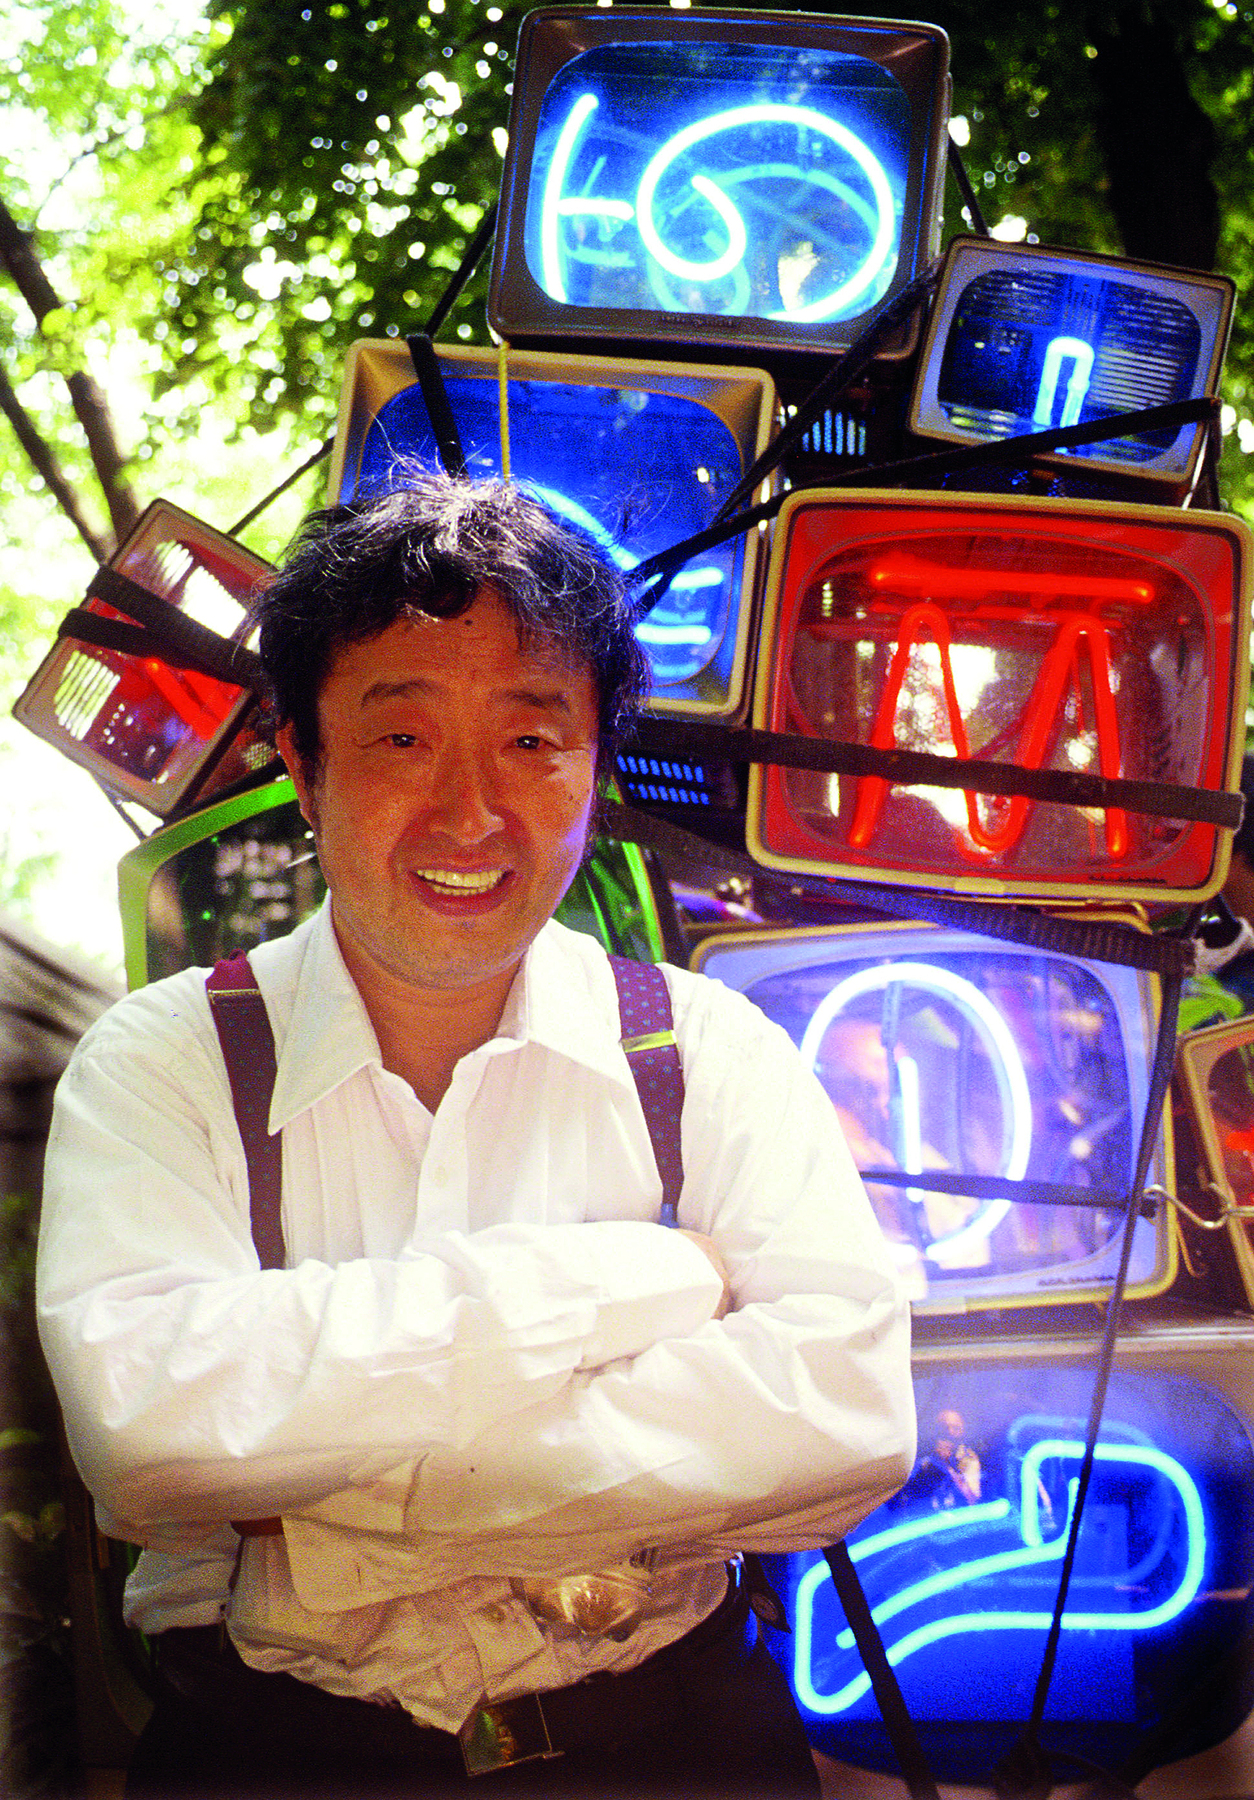 Fotografia. Homem de cabelo curto preto, vestido com camisa branca e suspensórios na cor marrom. Ao fundo, objetos abstratos formados por lâmpadas coloridas de neon.